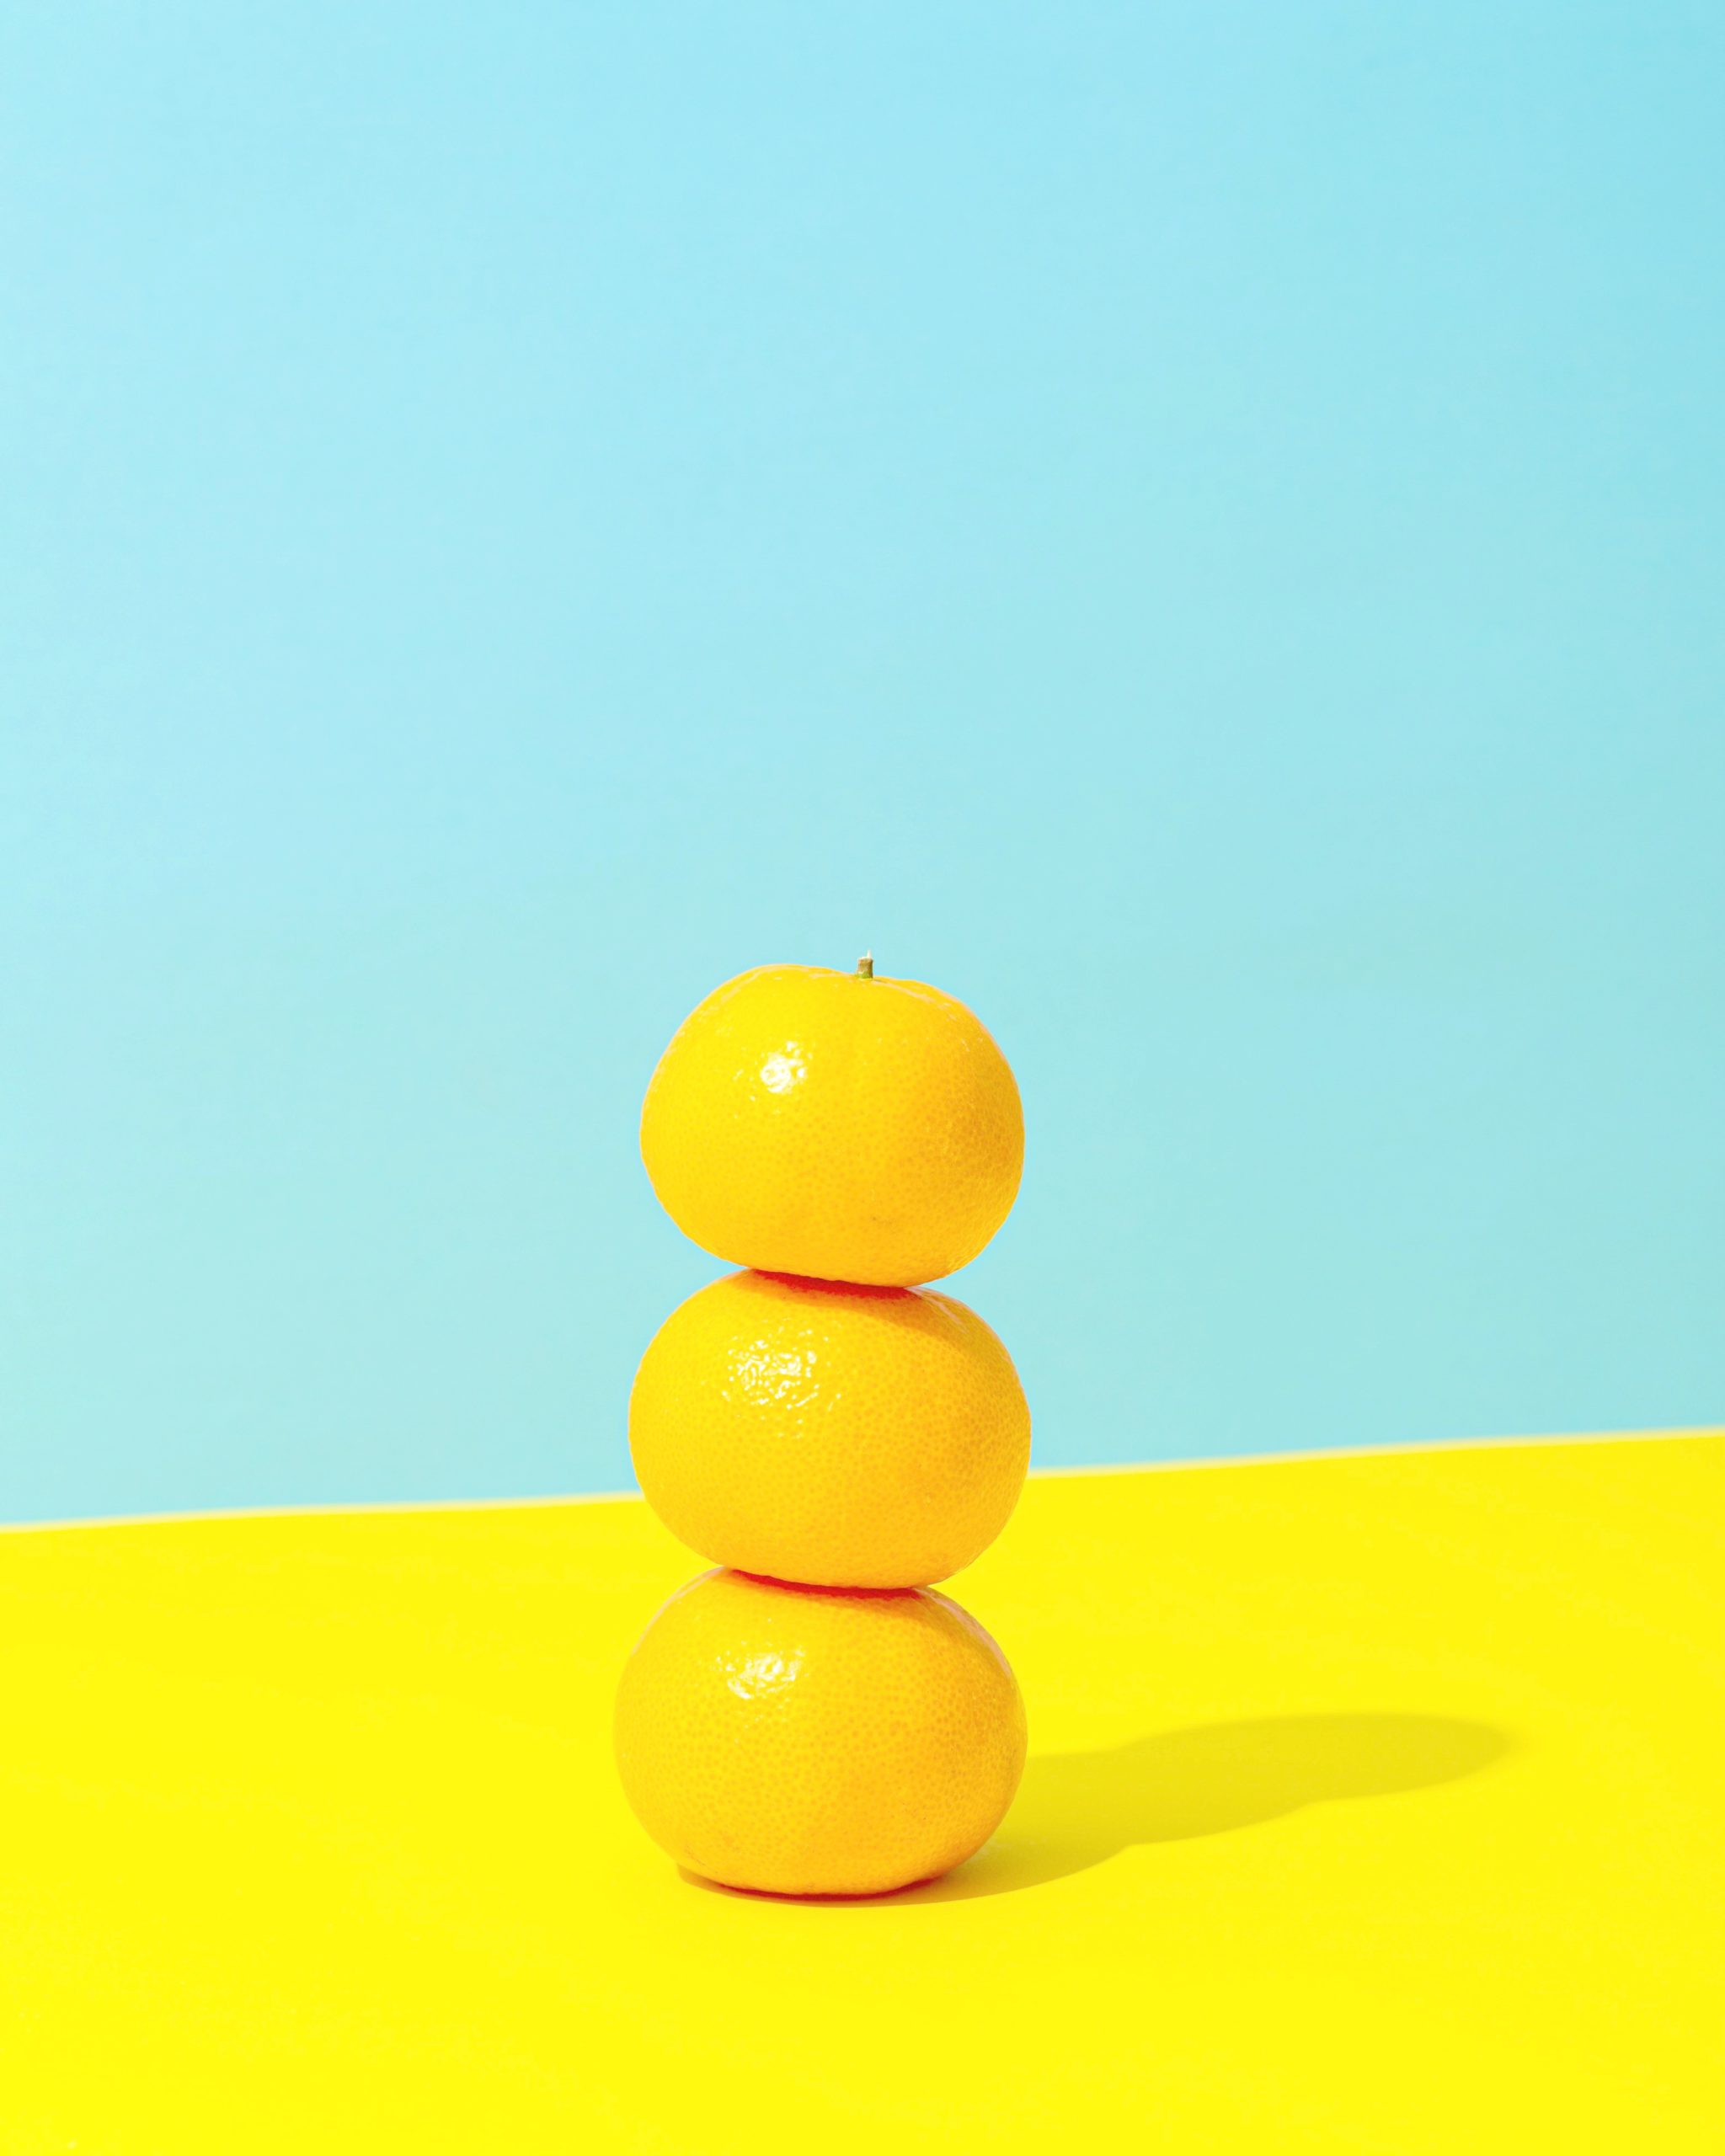 <img src="lemons.jpg" alt="three lemons stacked on top of each other"/> 